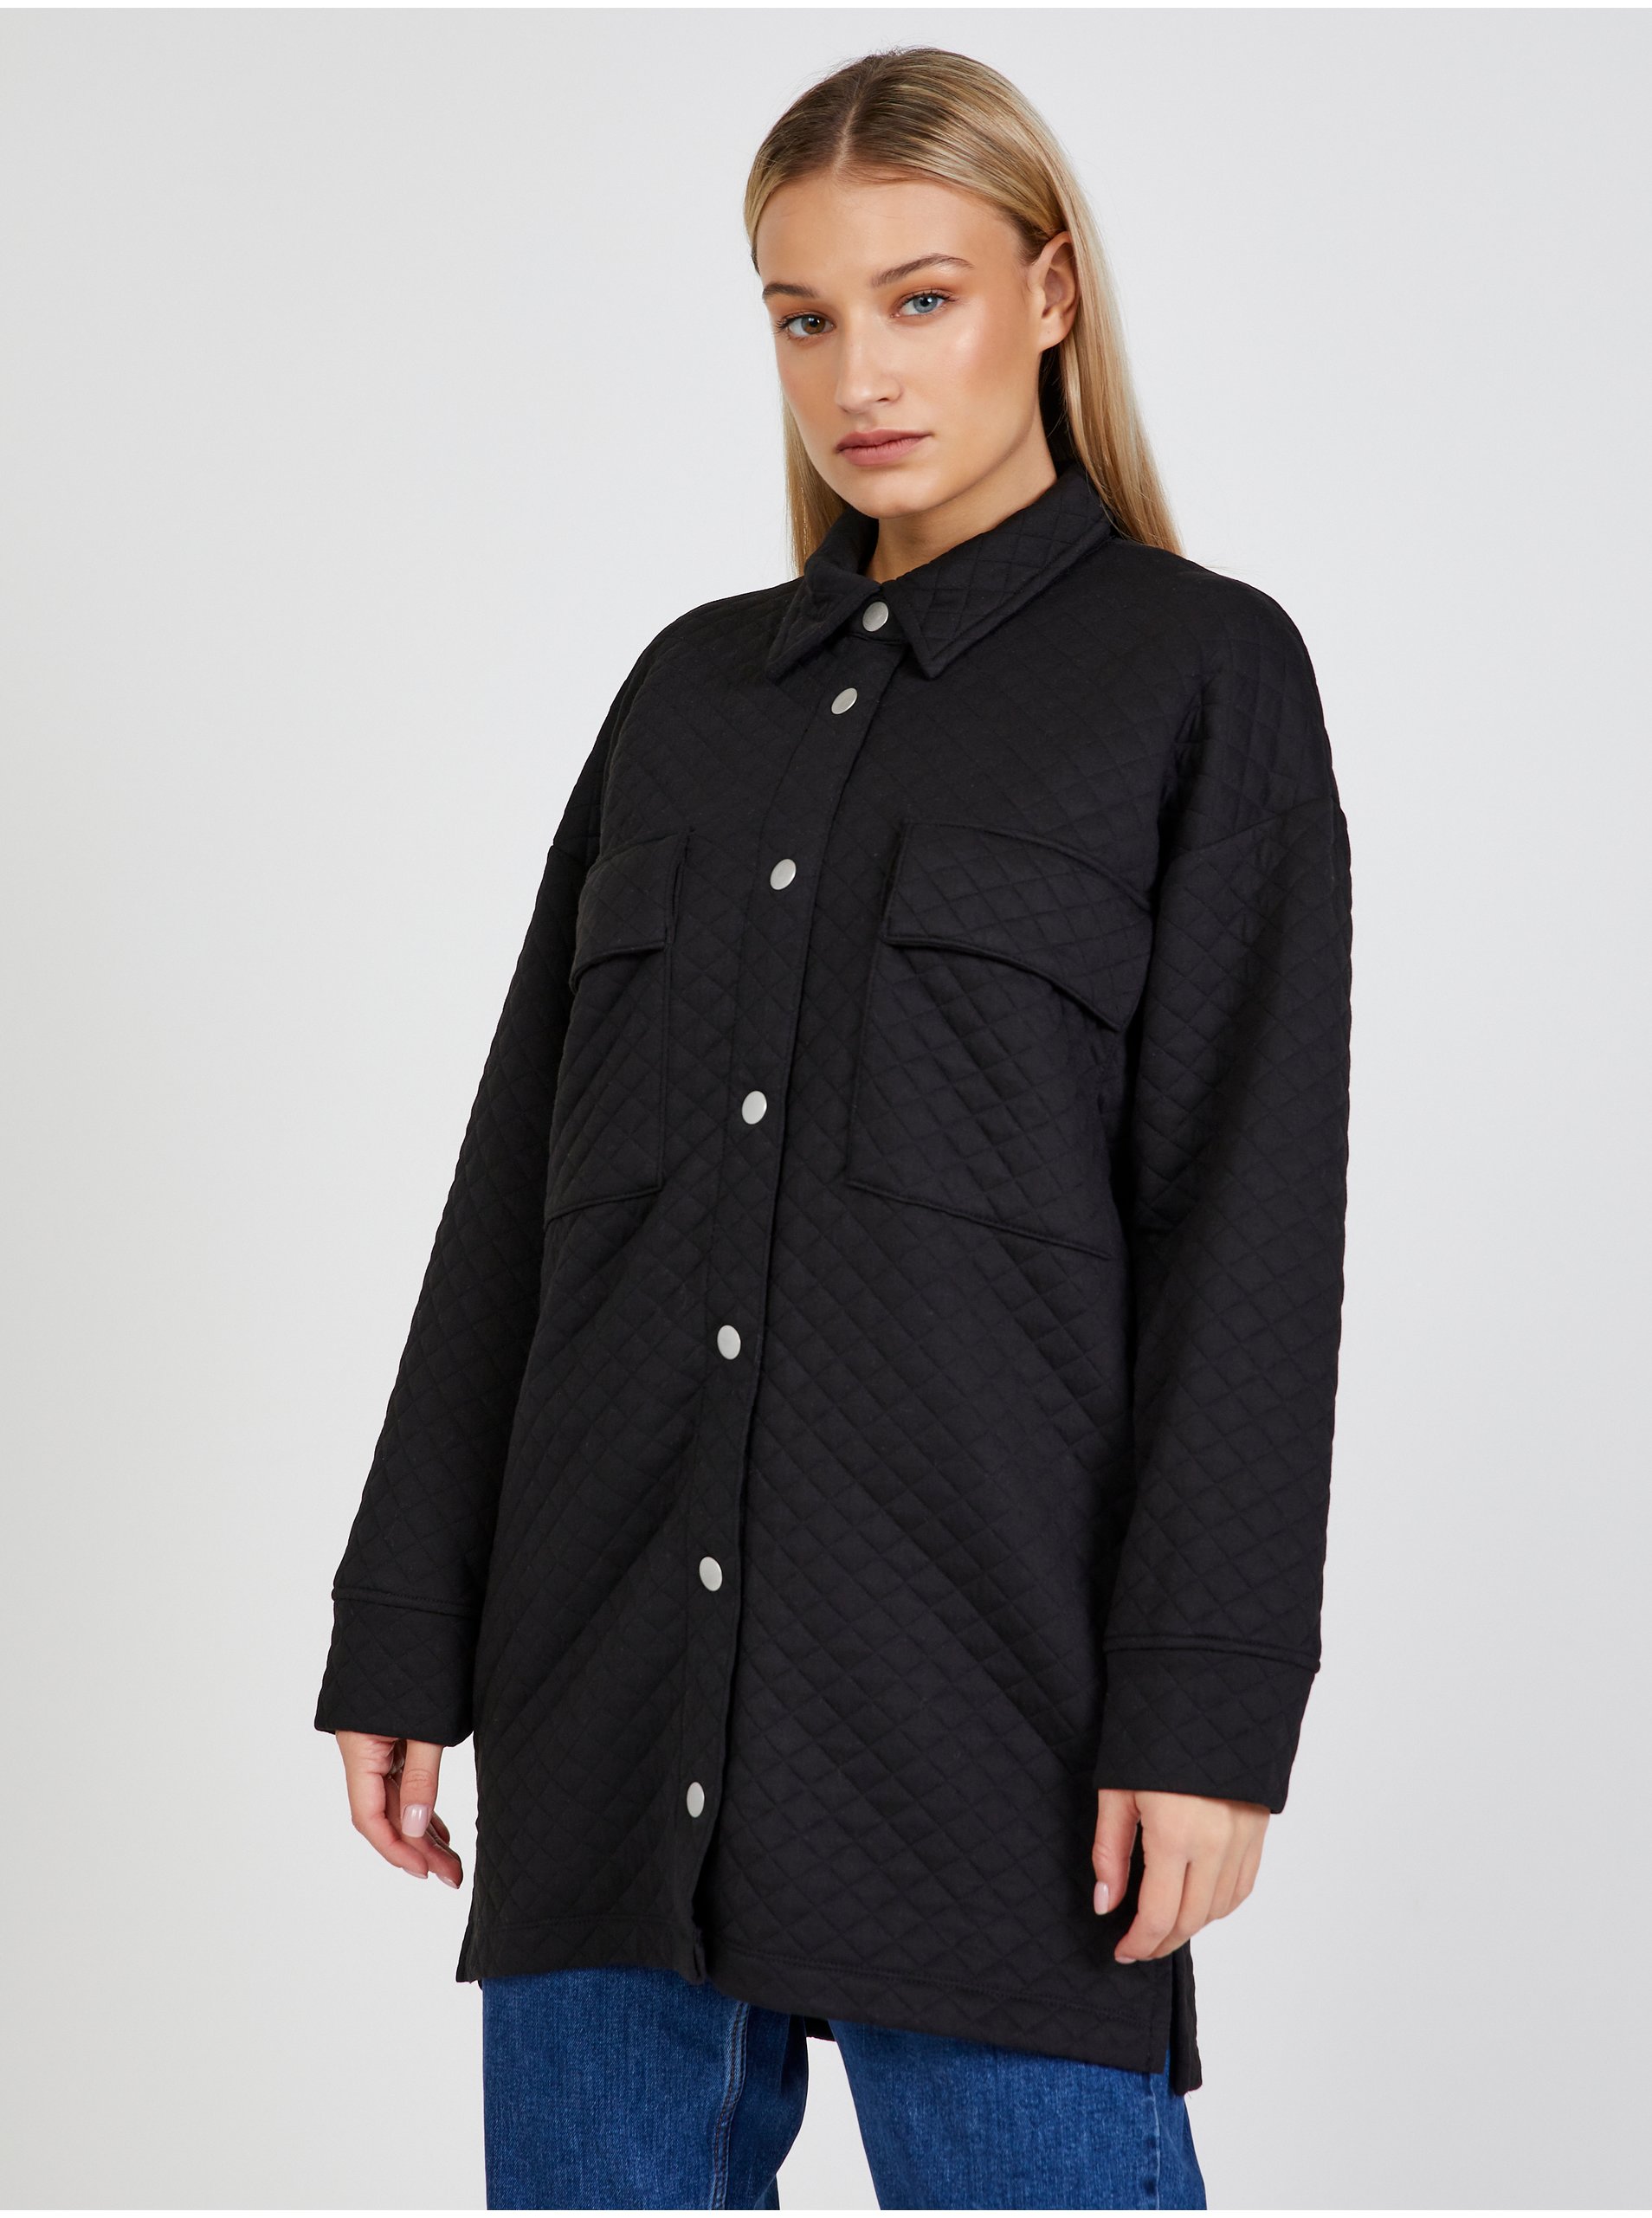 E-shop Černá dámská prošívaná lehká košilová bunda JDY Ruth